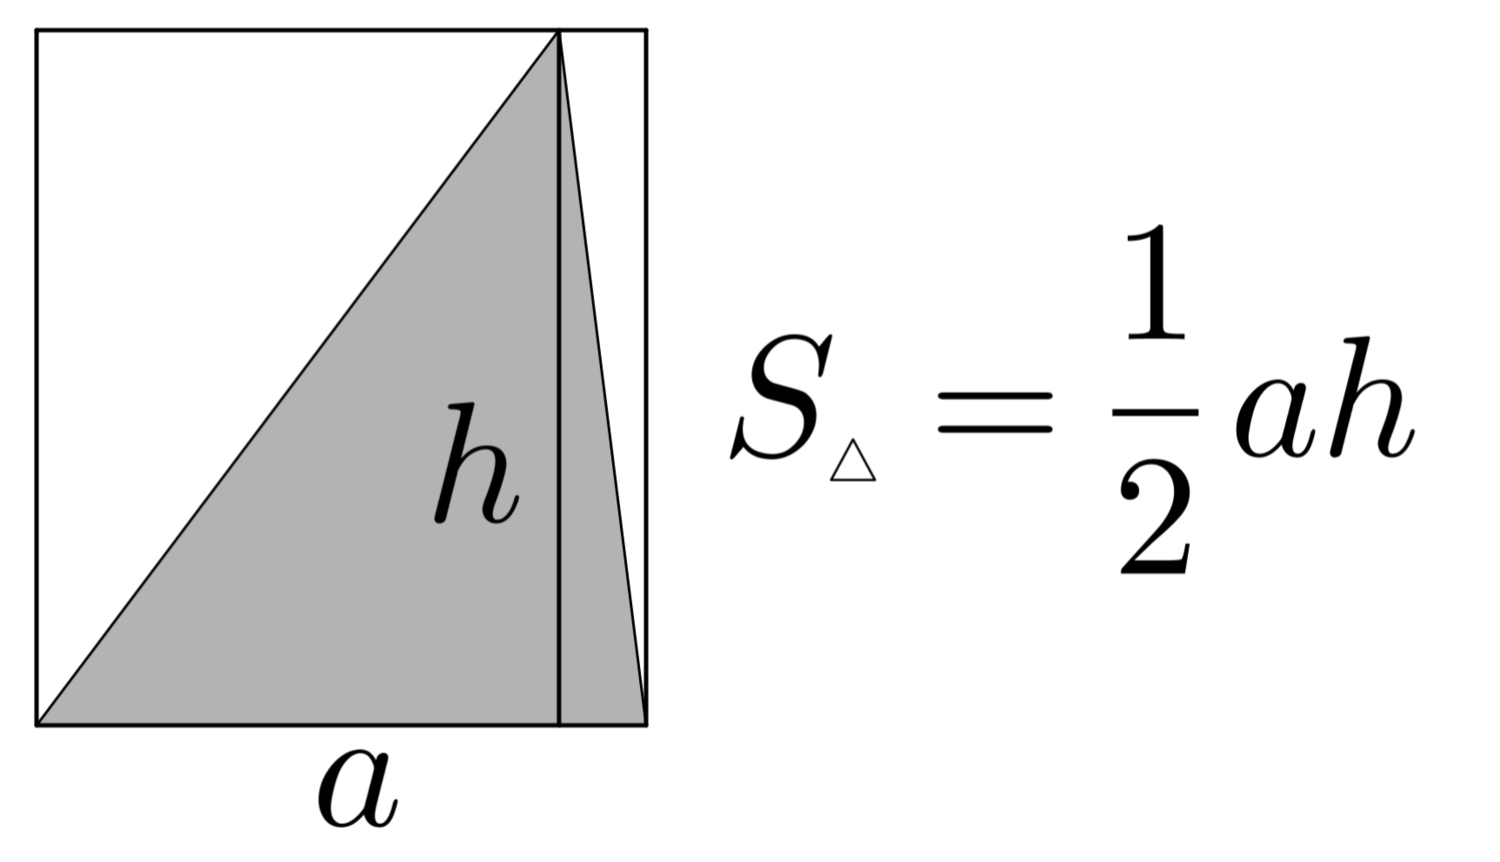 1 2 ah треугольник. Площадь умножить на высоту. Основание умножить на высоту. Площадь основания умножить на высоту. Площадь основания умножить на высоту это объём.